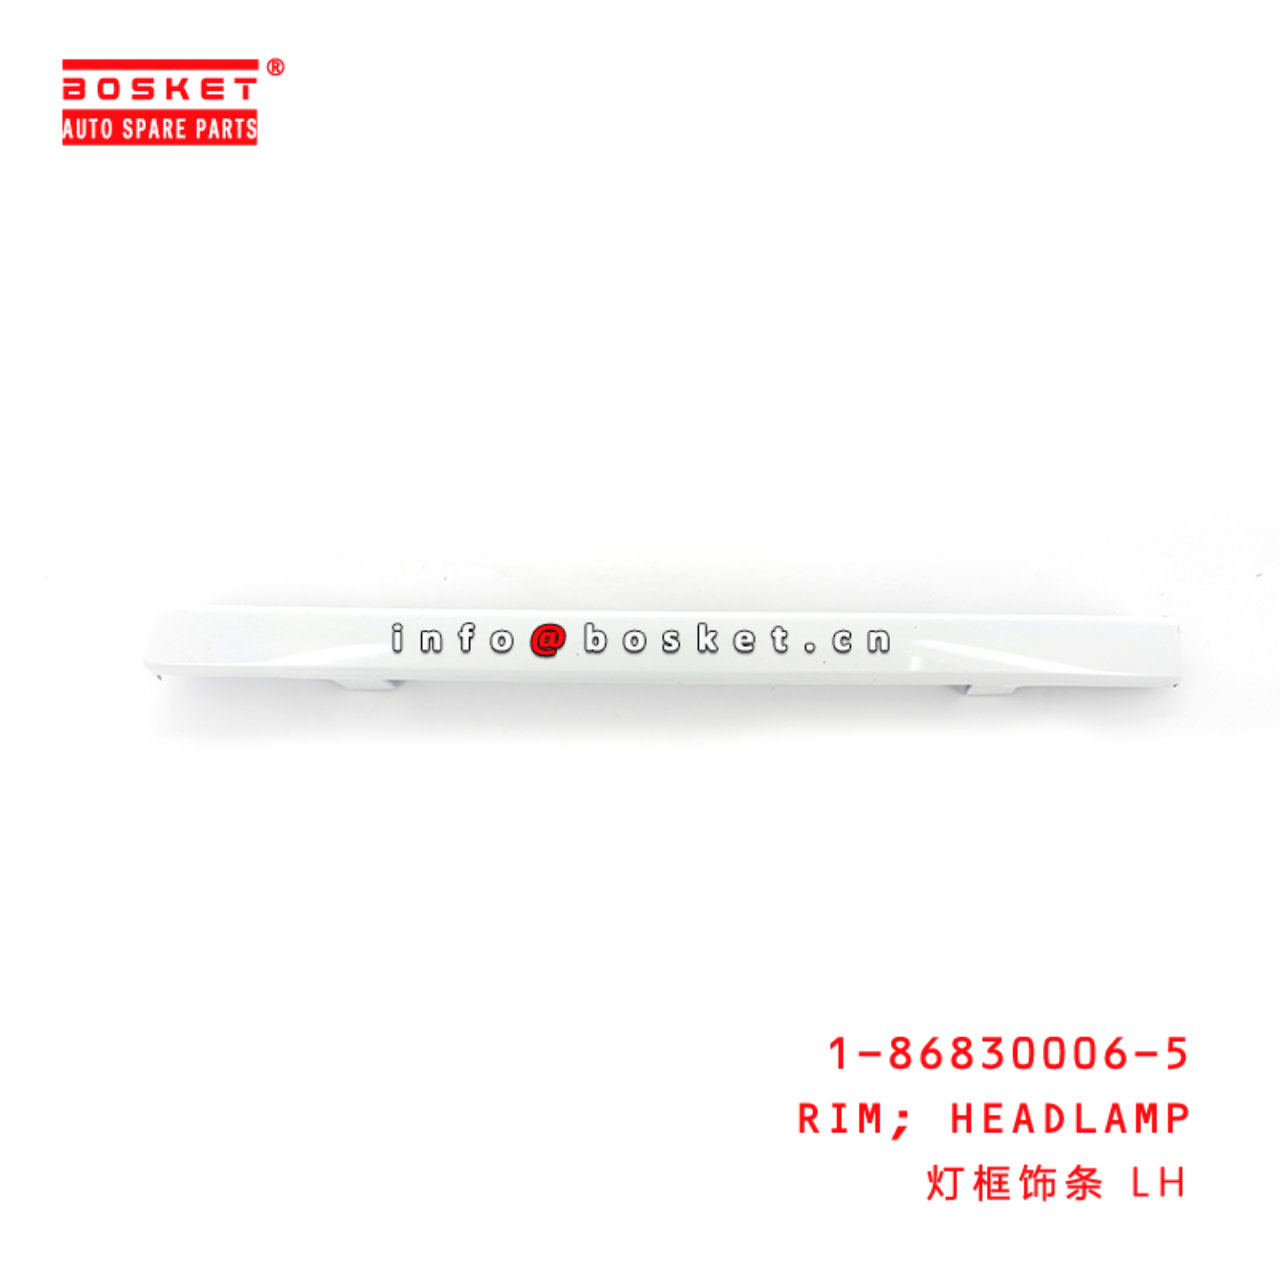 1-86830006-5 Headlamp Rim Suitable for ISUZU FVR34  1868300065